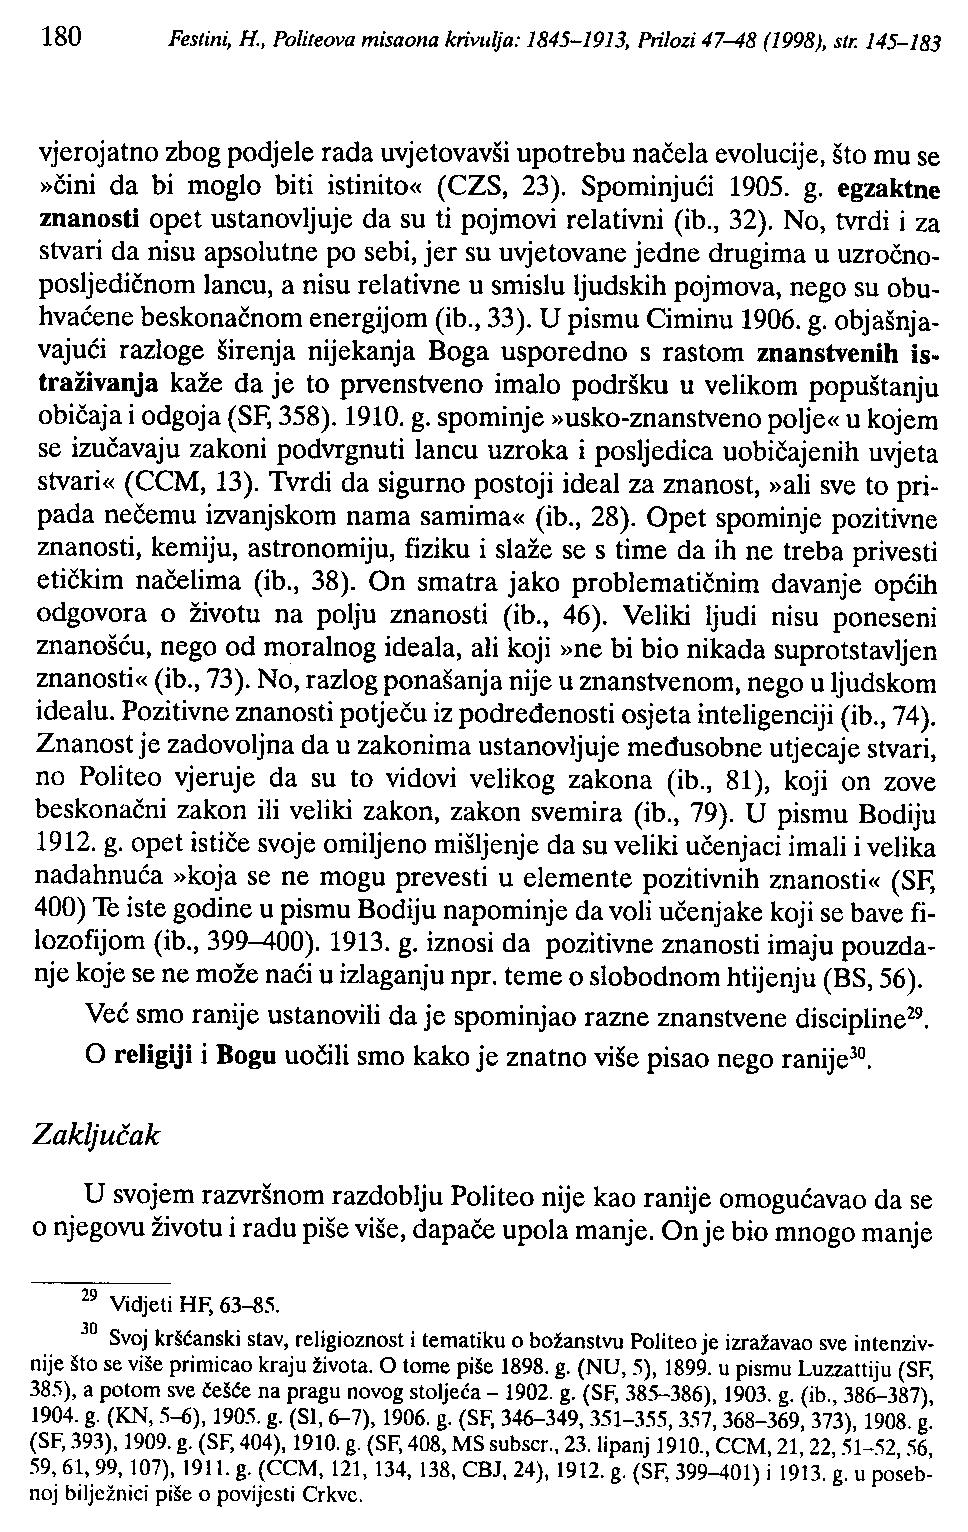 180 Festini, R, Politeova misaona krivl/lja: 1845-1913, Prilozi 47-48 (1998), str.